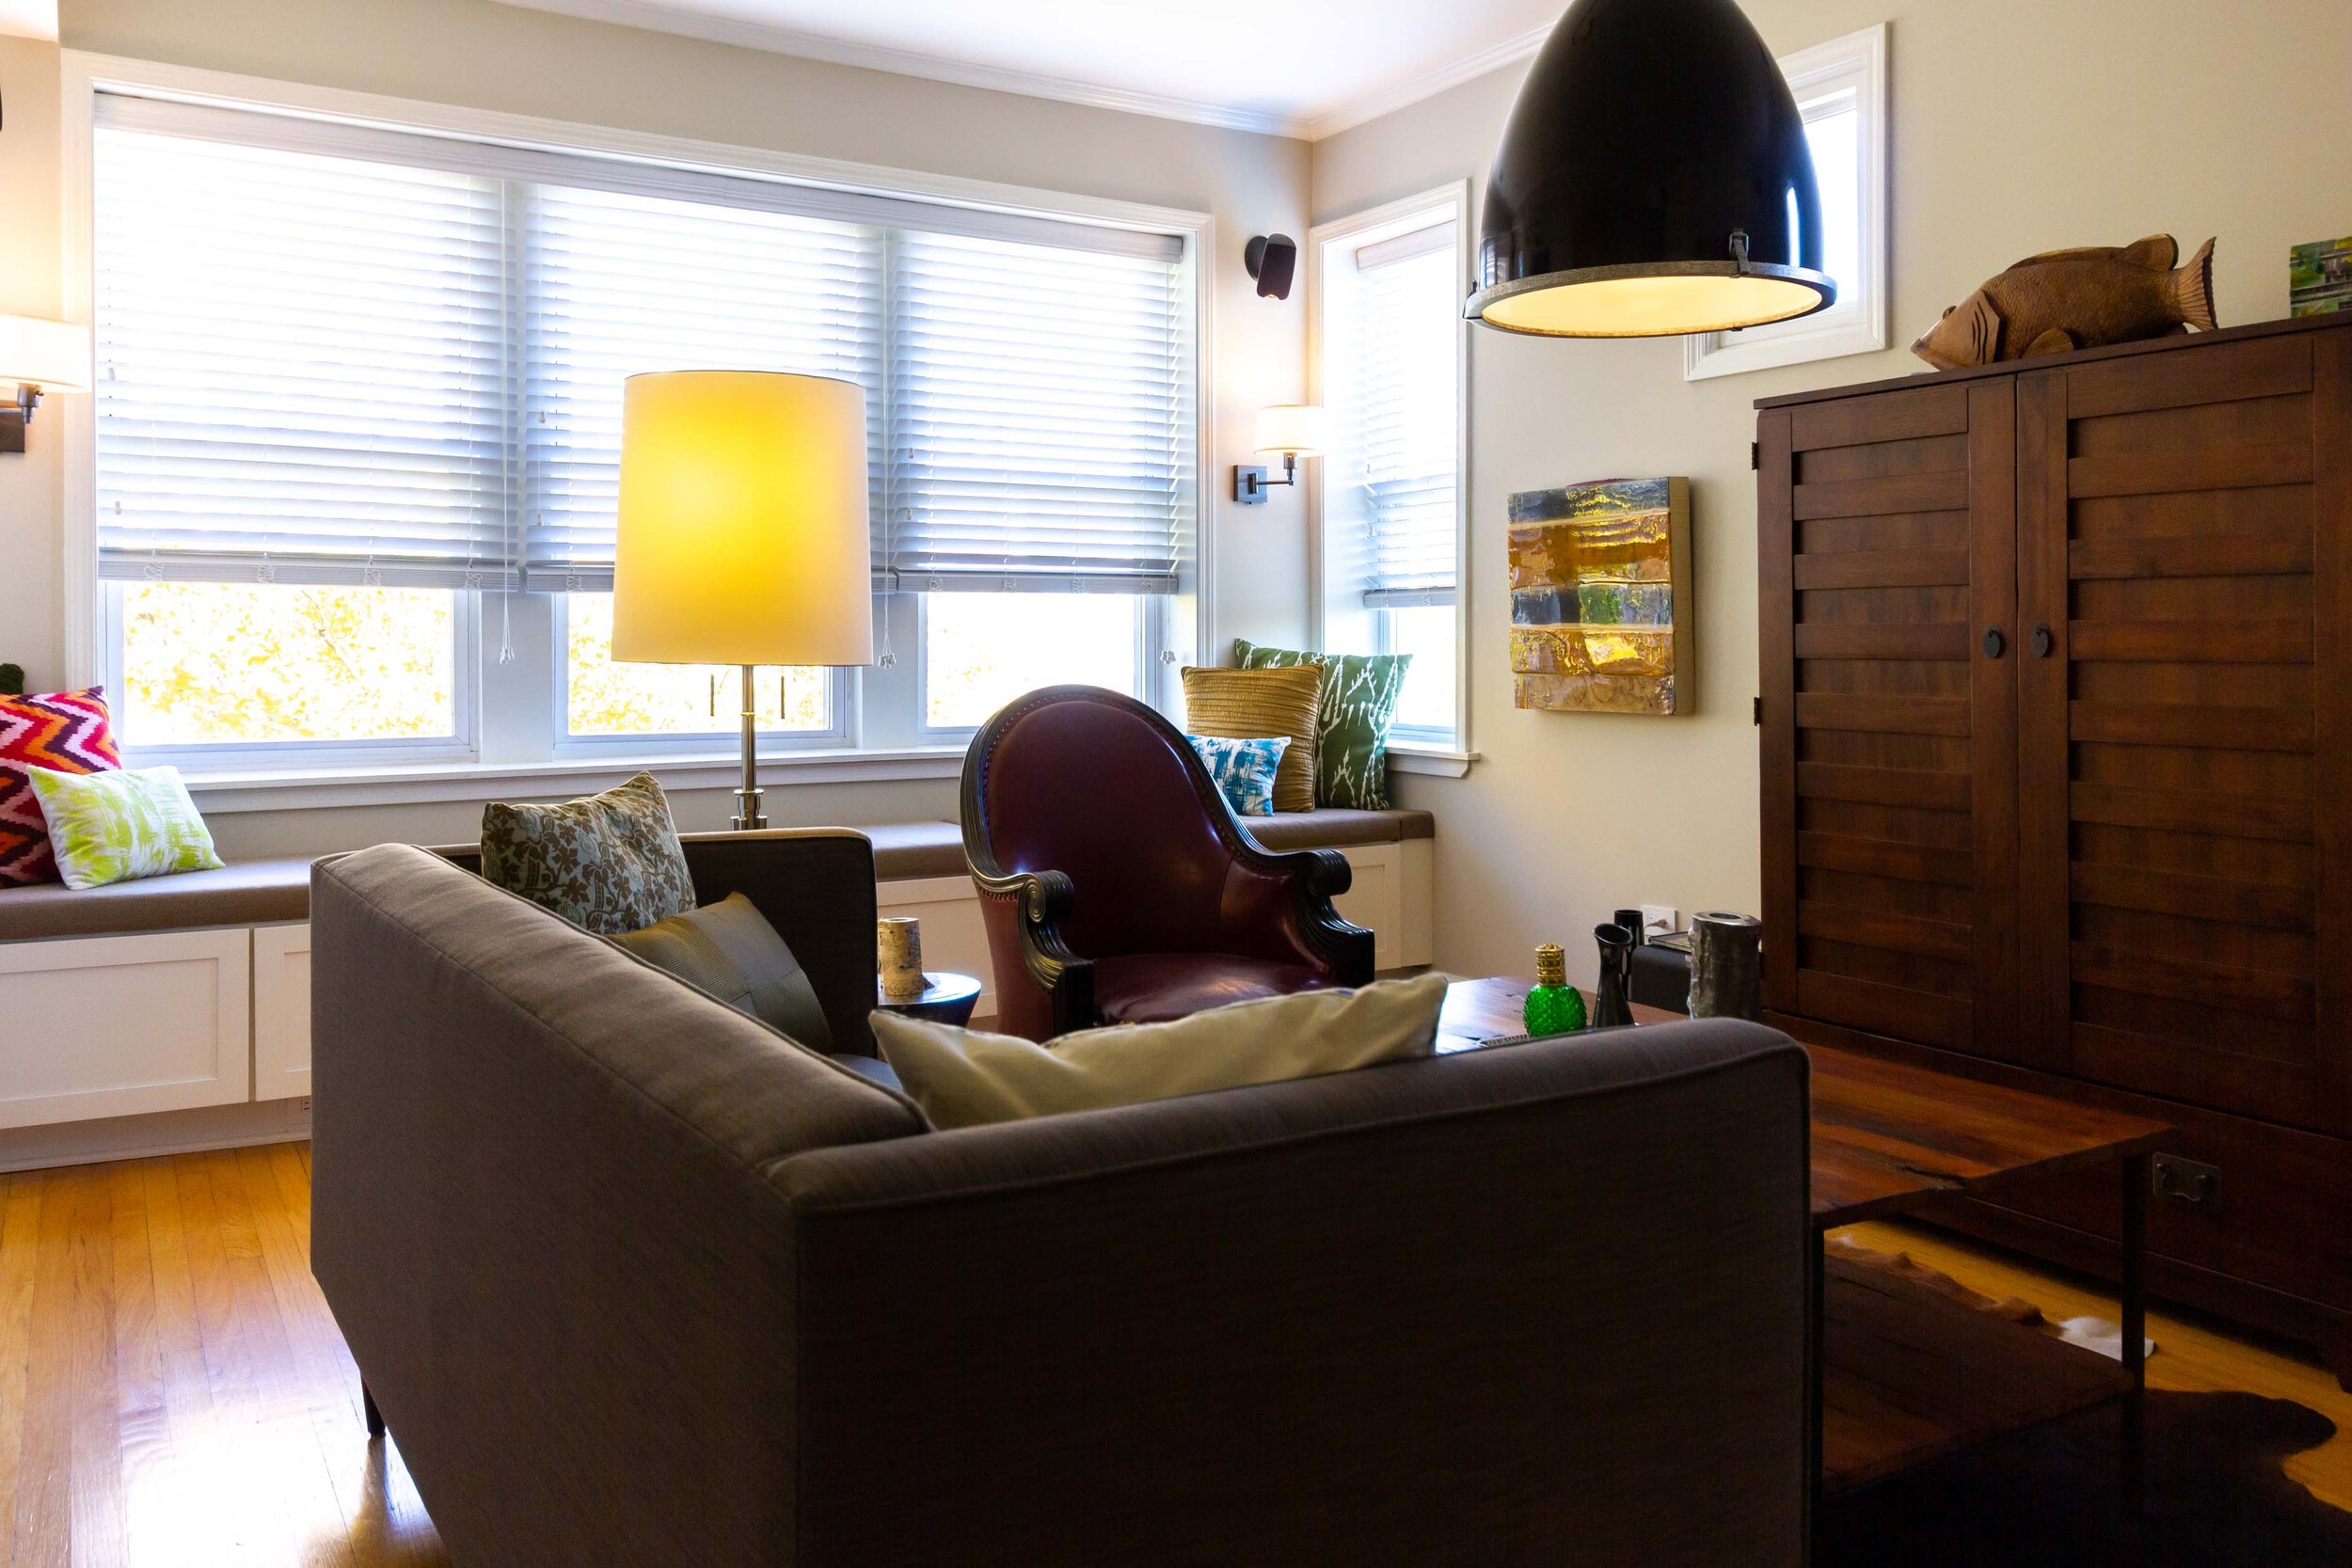 质朴的现代客厅 - 有土气咖啡桌的现代沙发 - 室内设计芝加哥.jpg